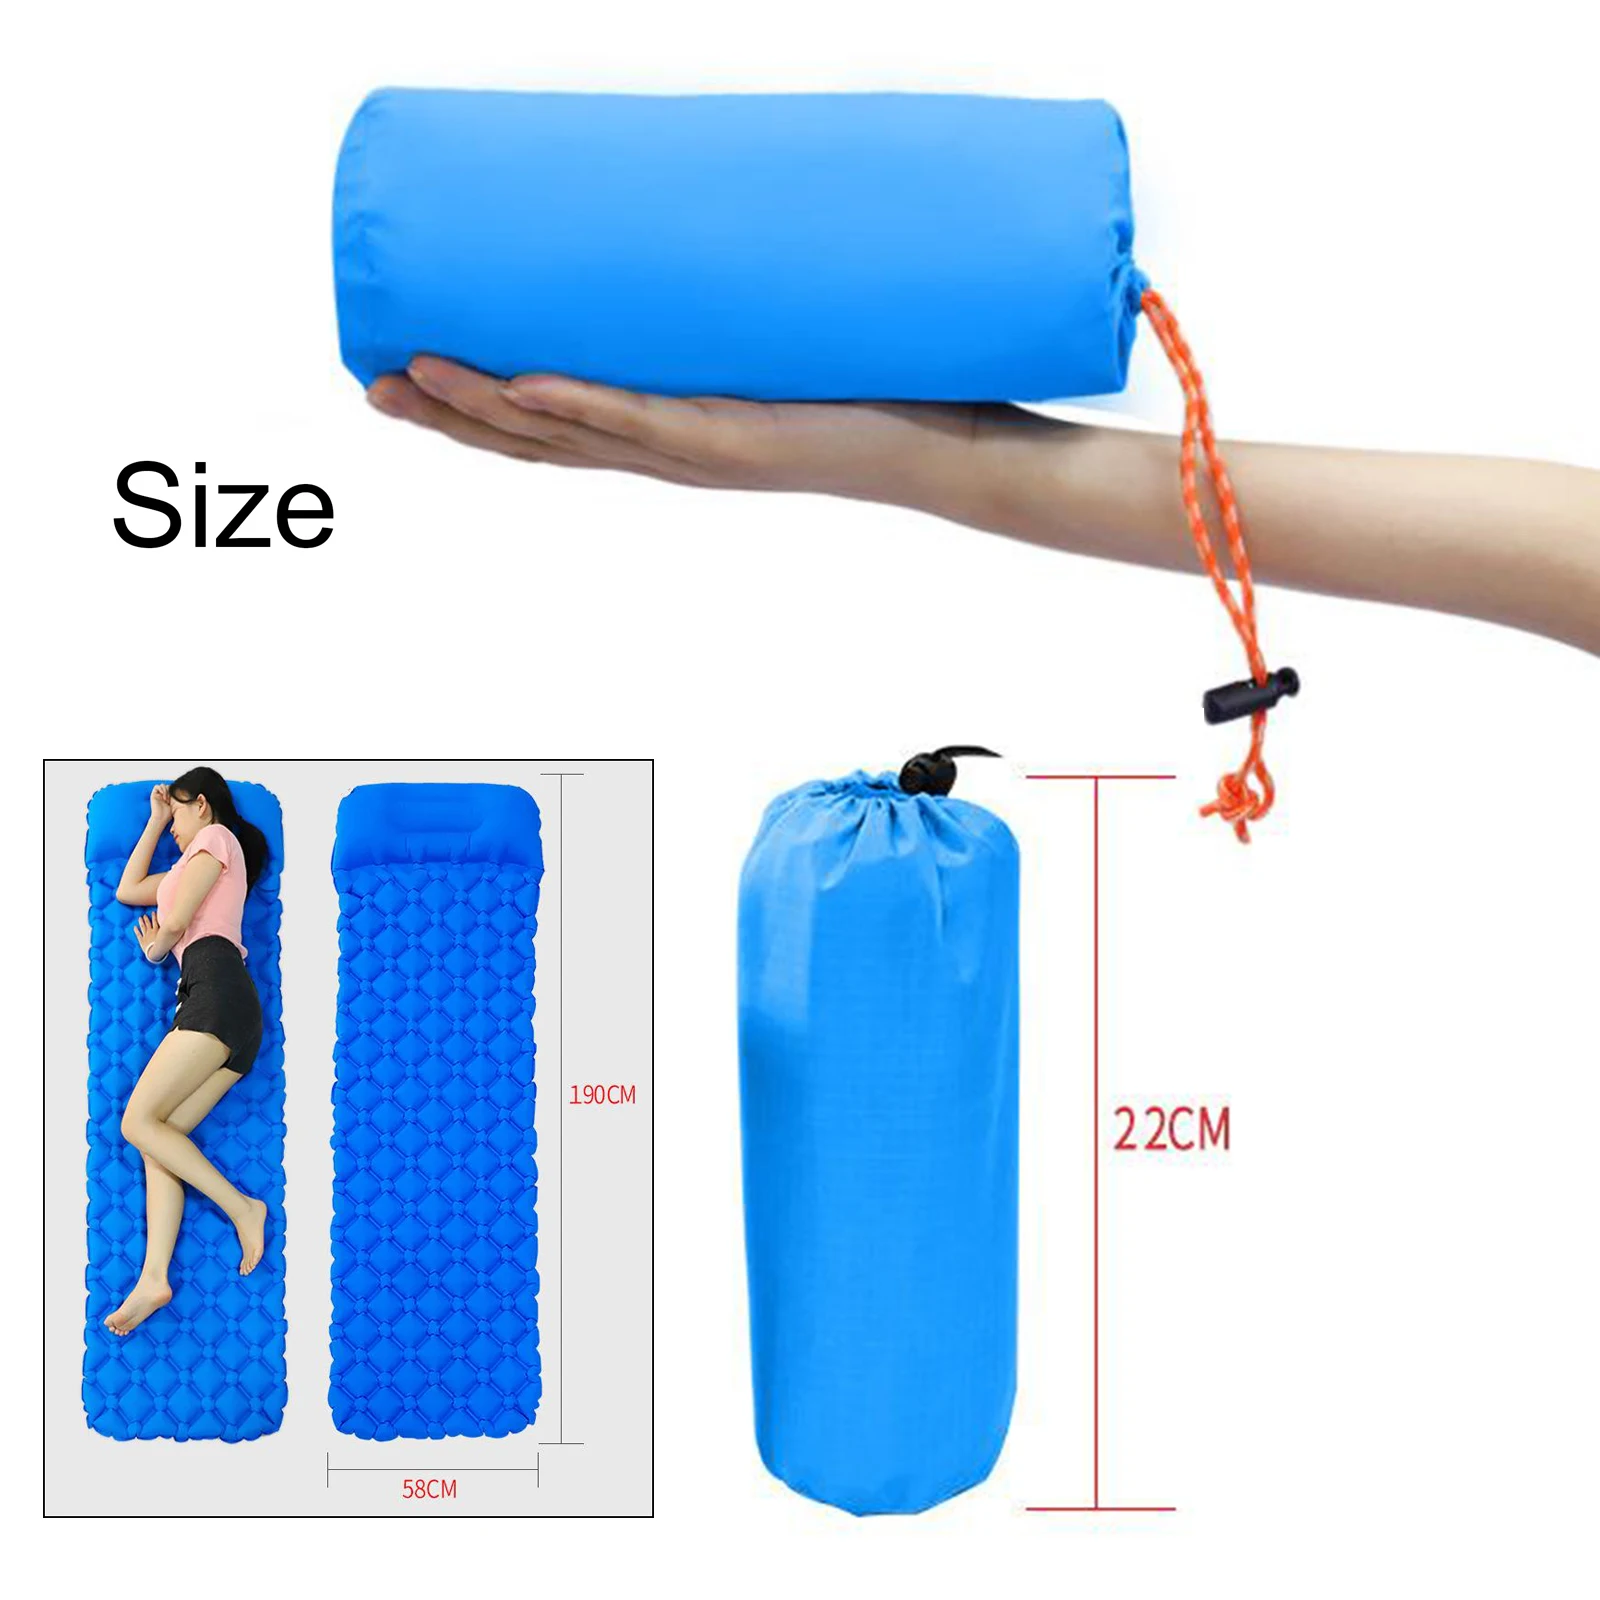 размеры надувных матрасов для палаток в спортмастере